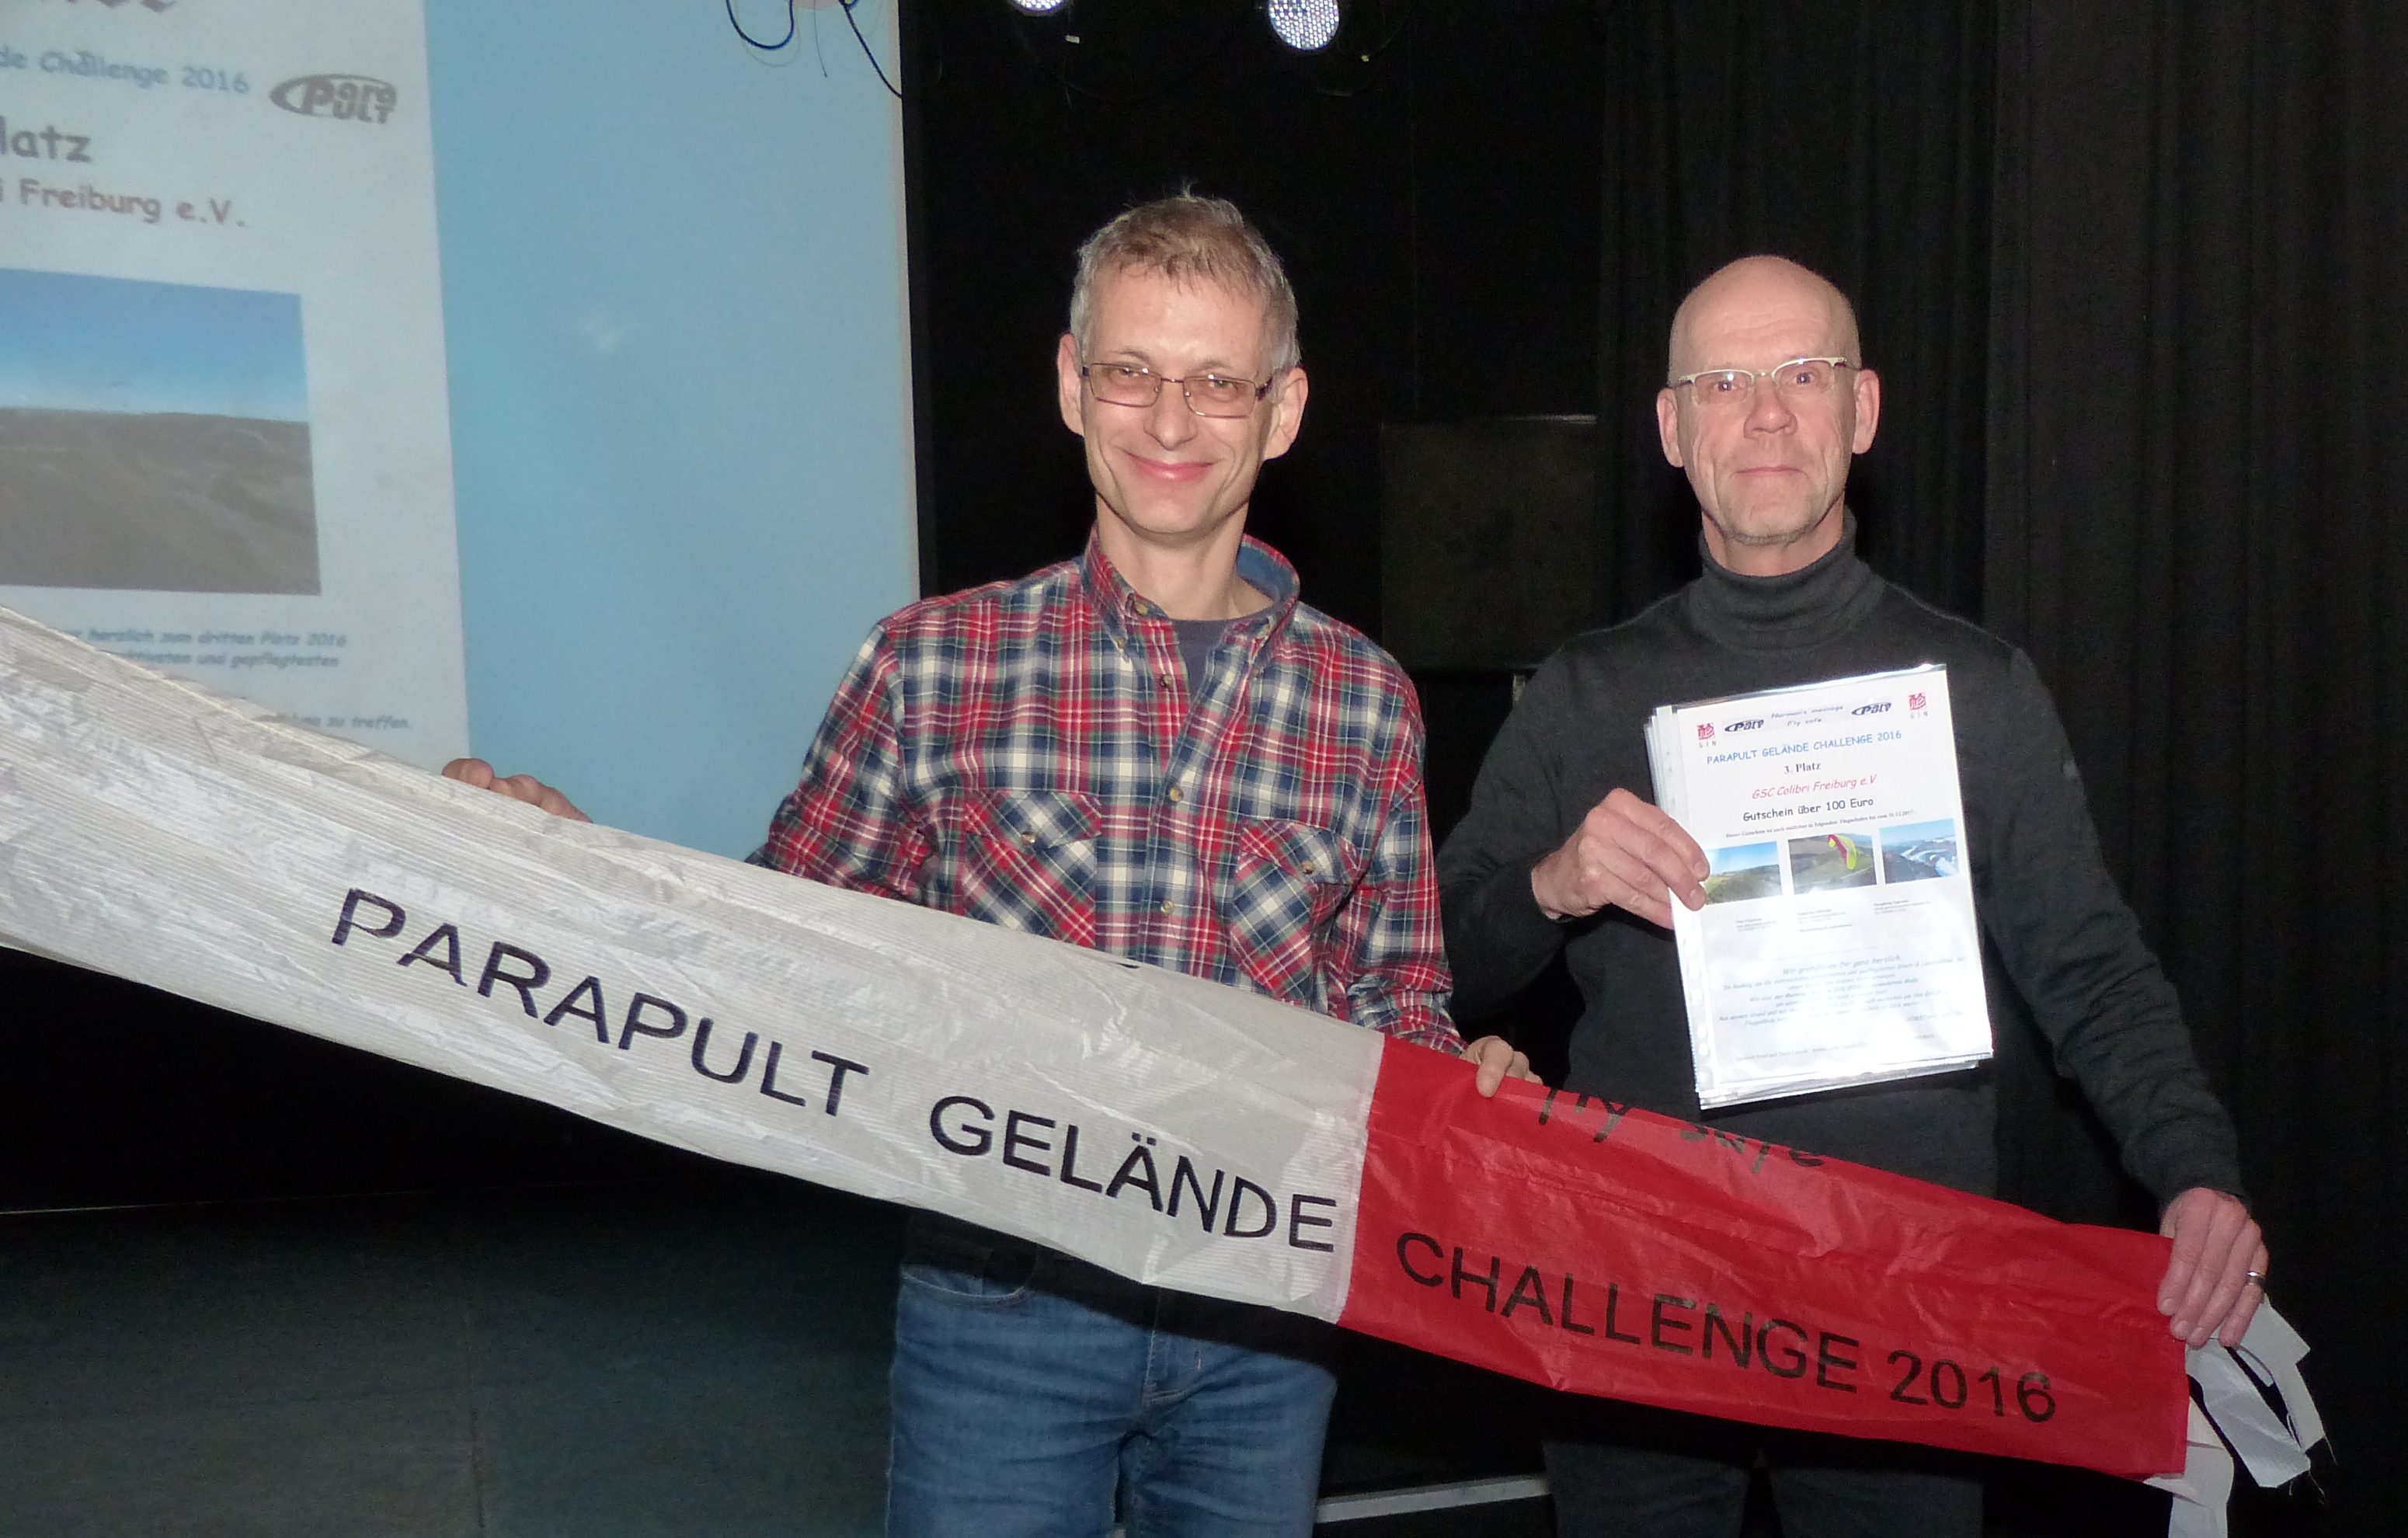 Parapult Geländechallenge 2016 – 3. Platz für den GSC Colibri Freiburg e.V.